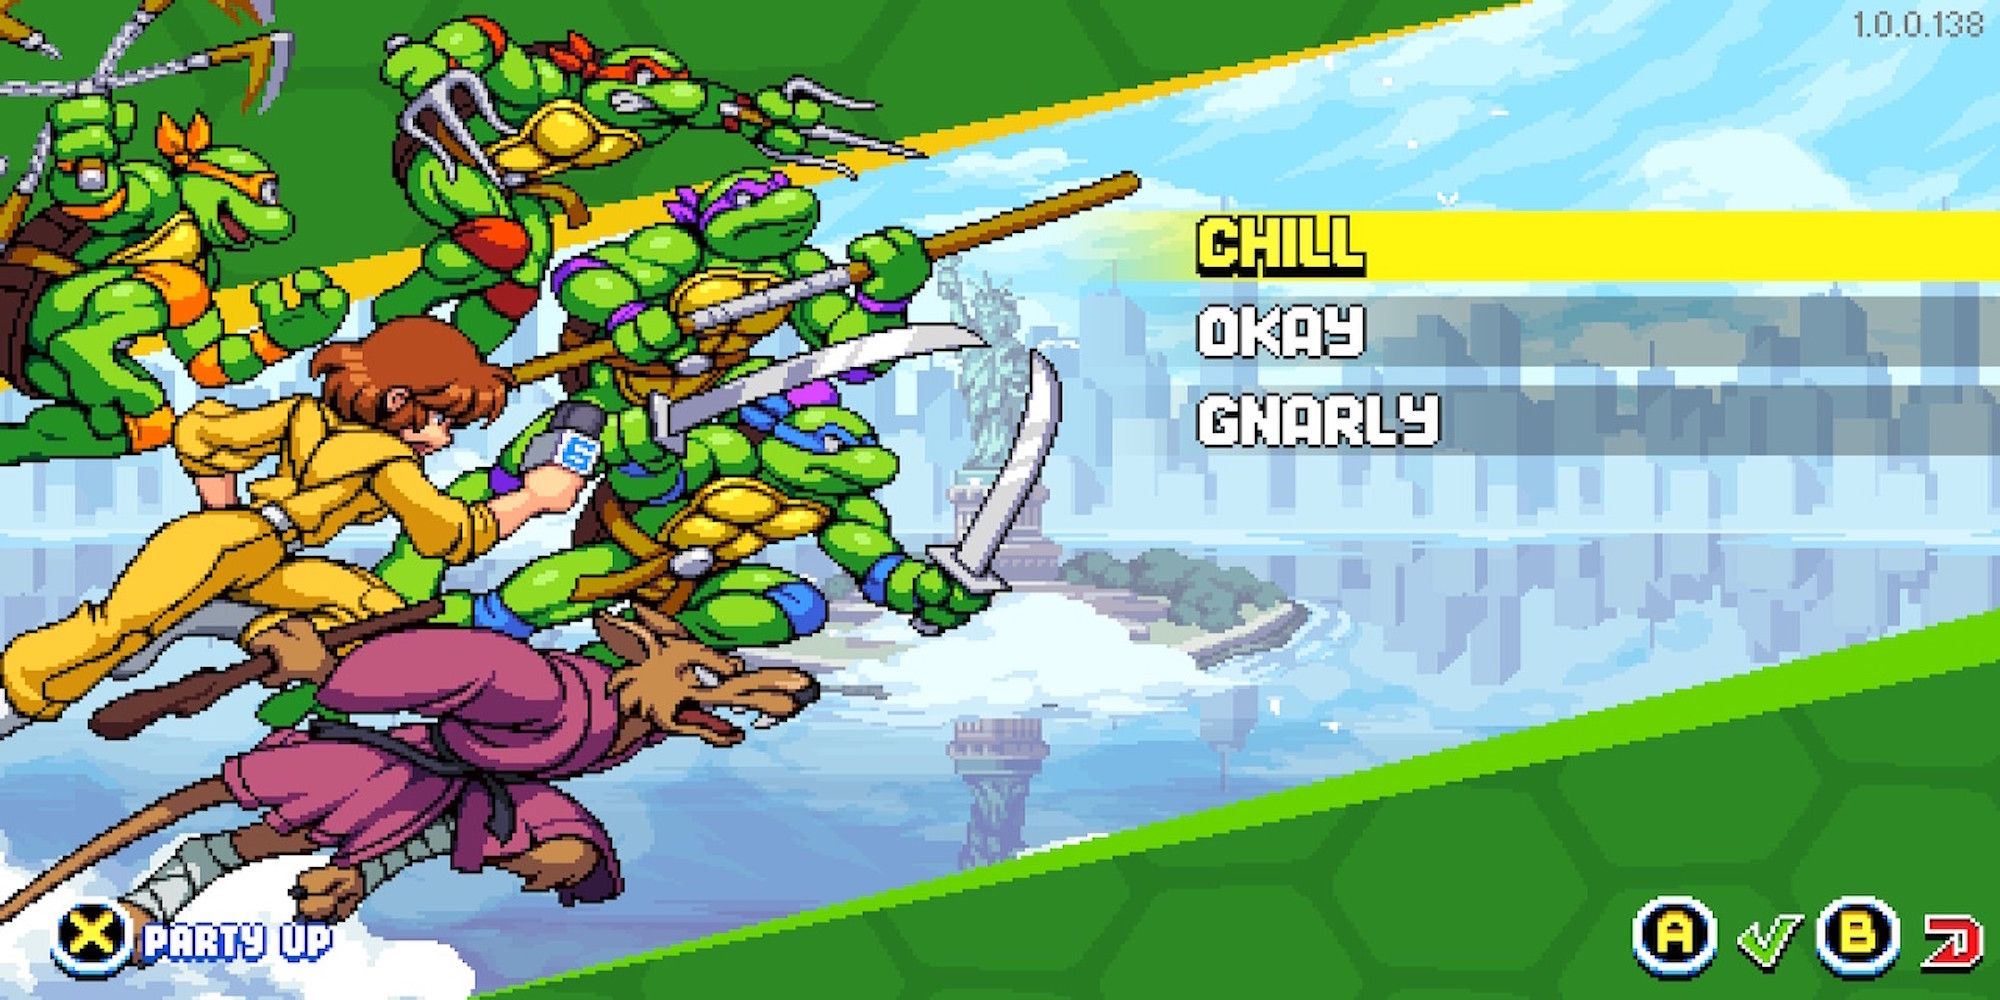 The difficulty menu in Teenage Mutant Ninja Turtles Shredder's Revenge